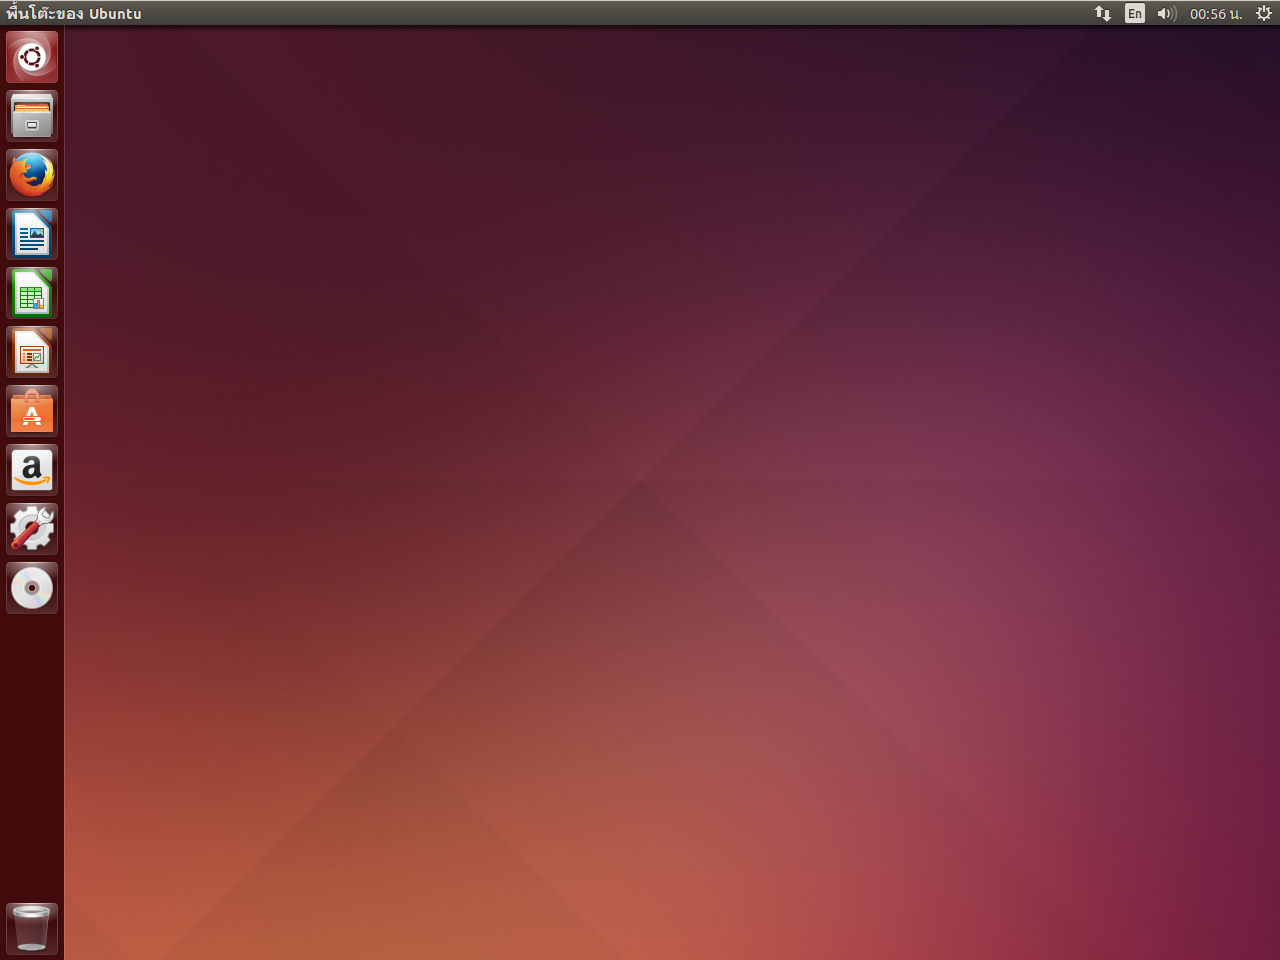 ขั้นตอนการติดตั้ง Ubuntu 14.04 - Home